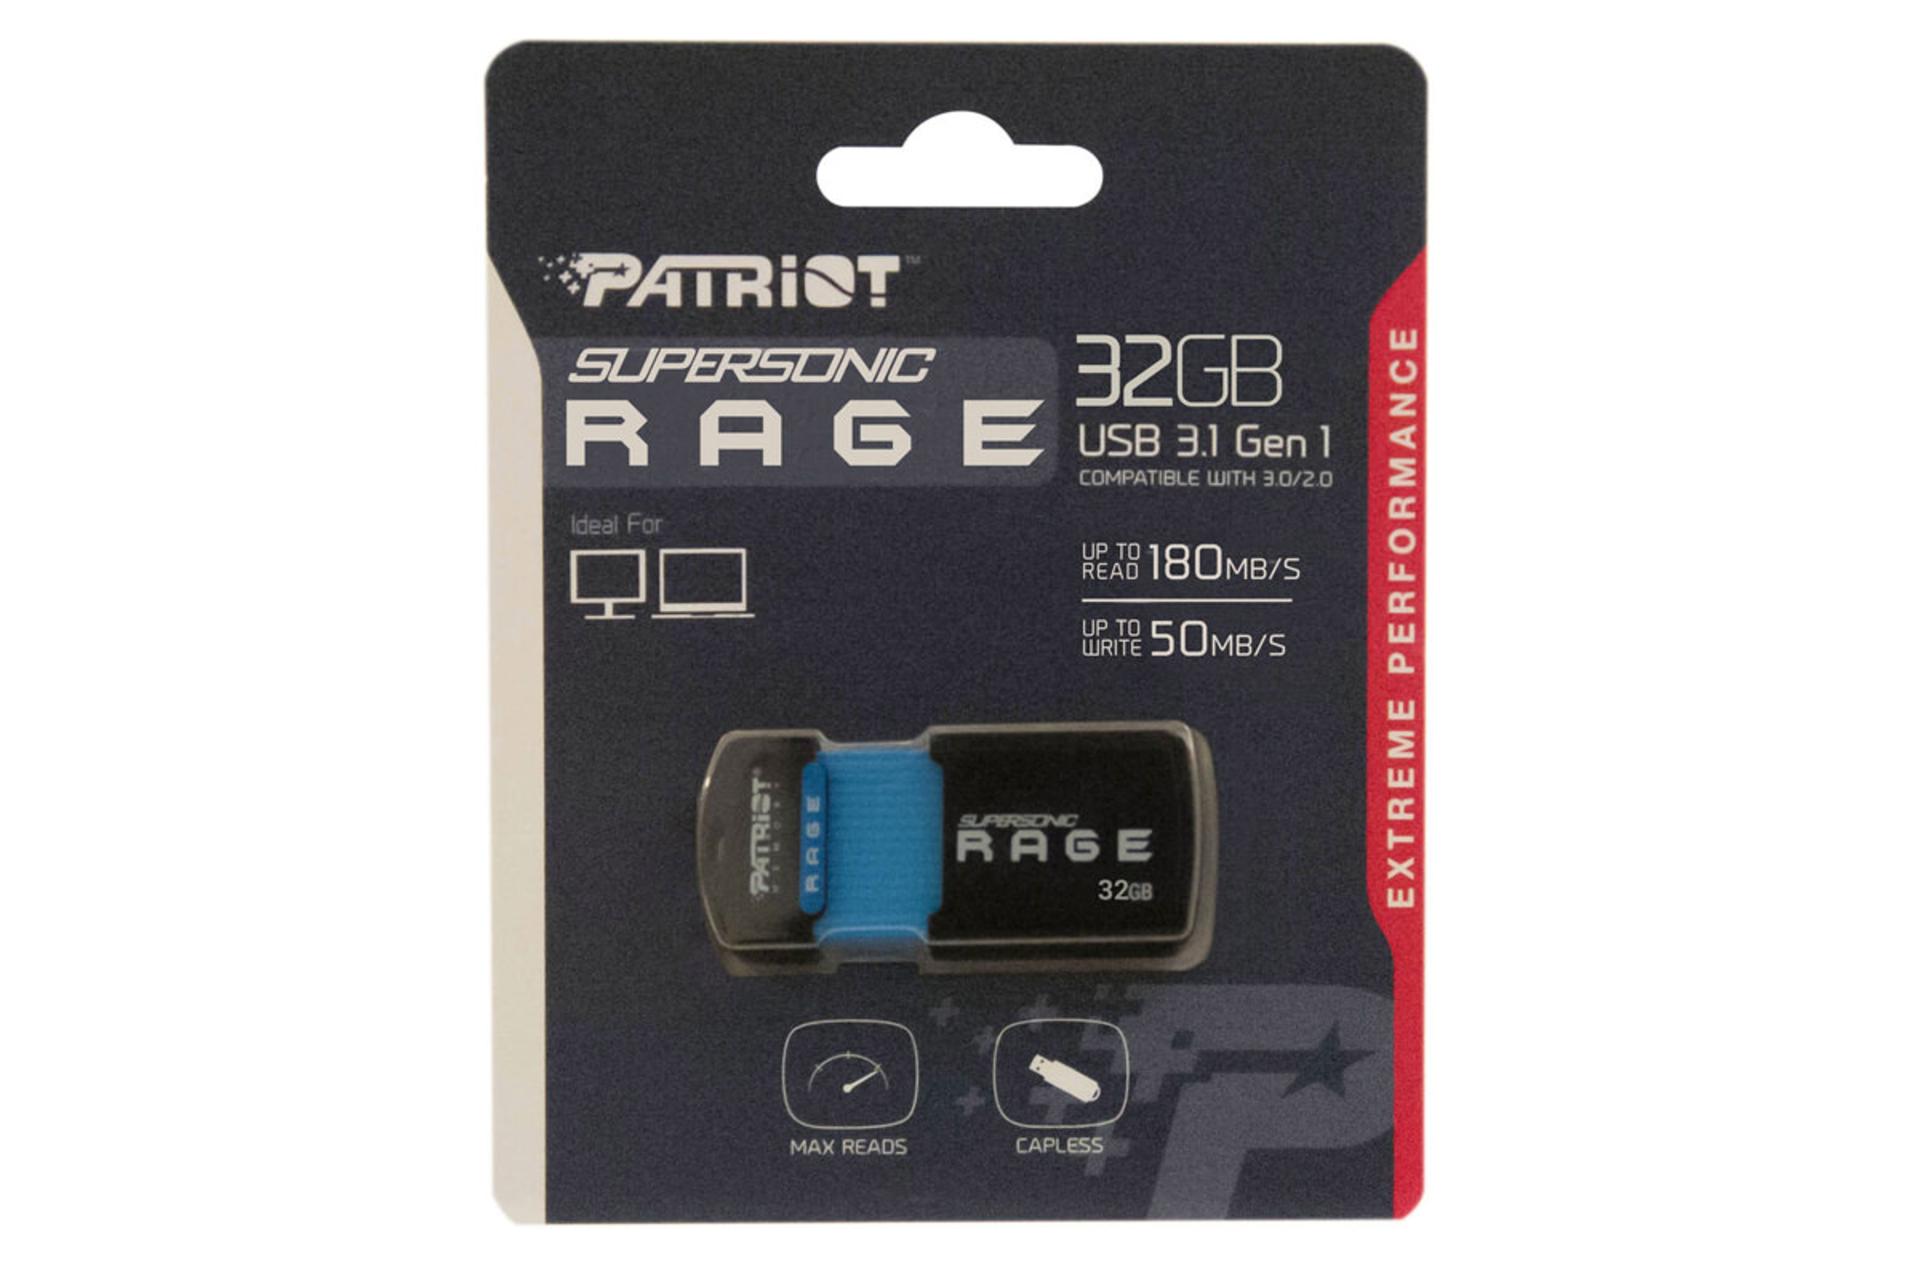 جعبه فلش مموری پاتریوت مدل Supersonic Rage Series USB 3.0 ظرفیت 32 گیگابایت